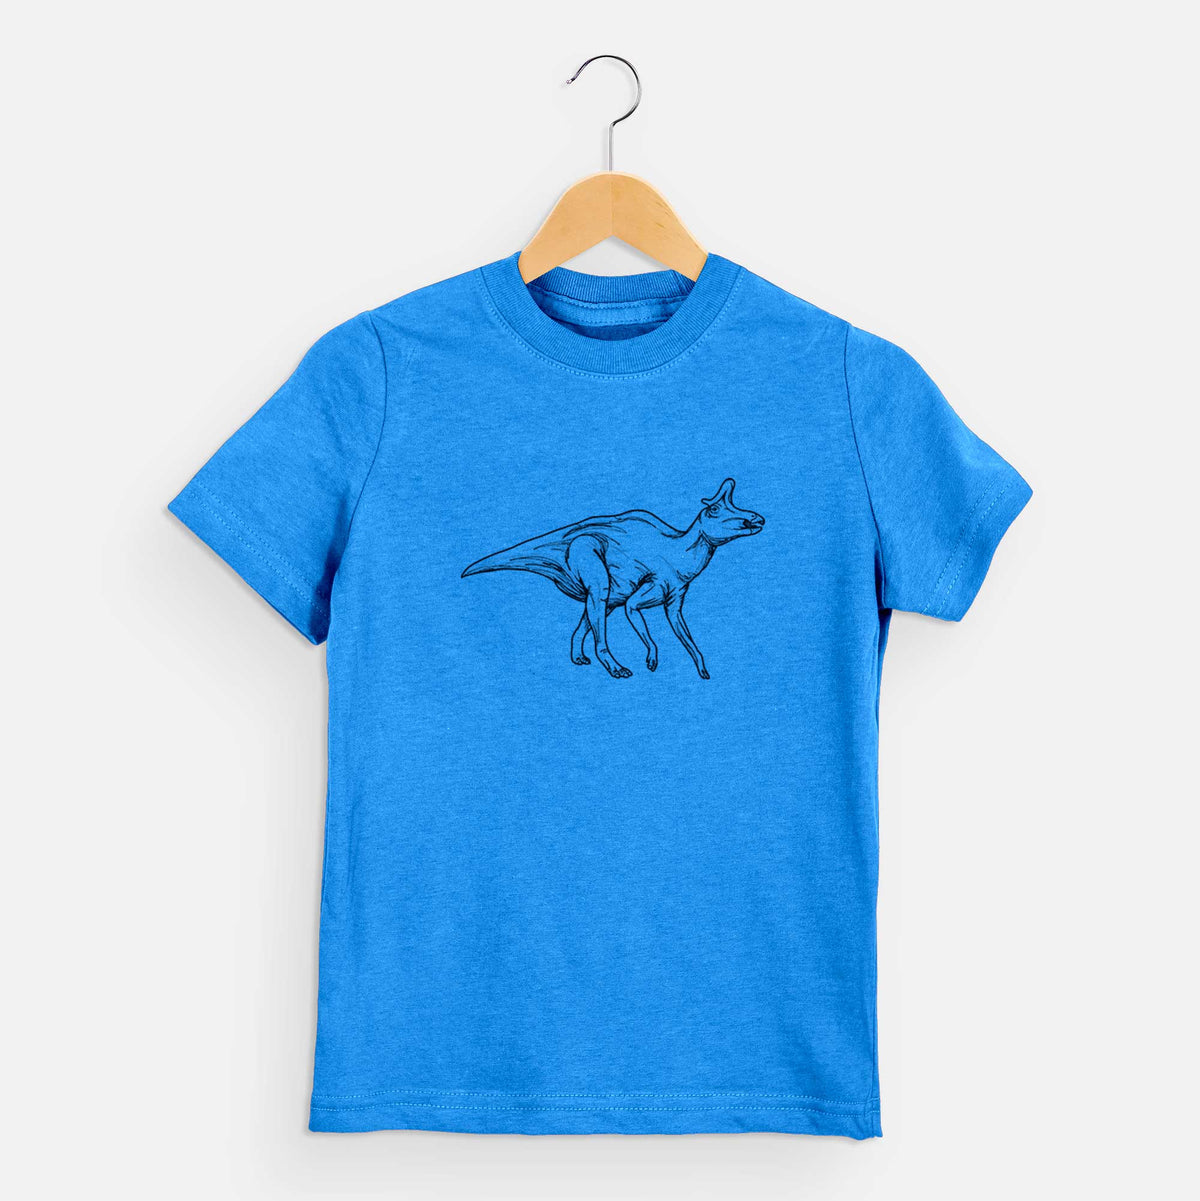 Lambeosaurus Lambei - Kids Shirt